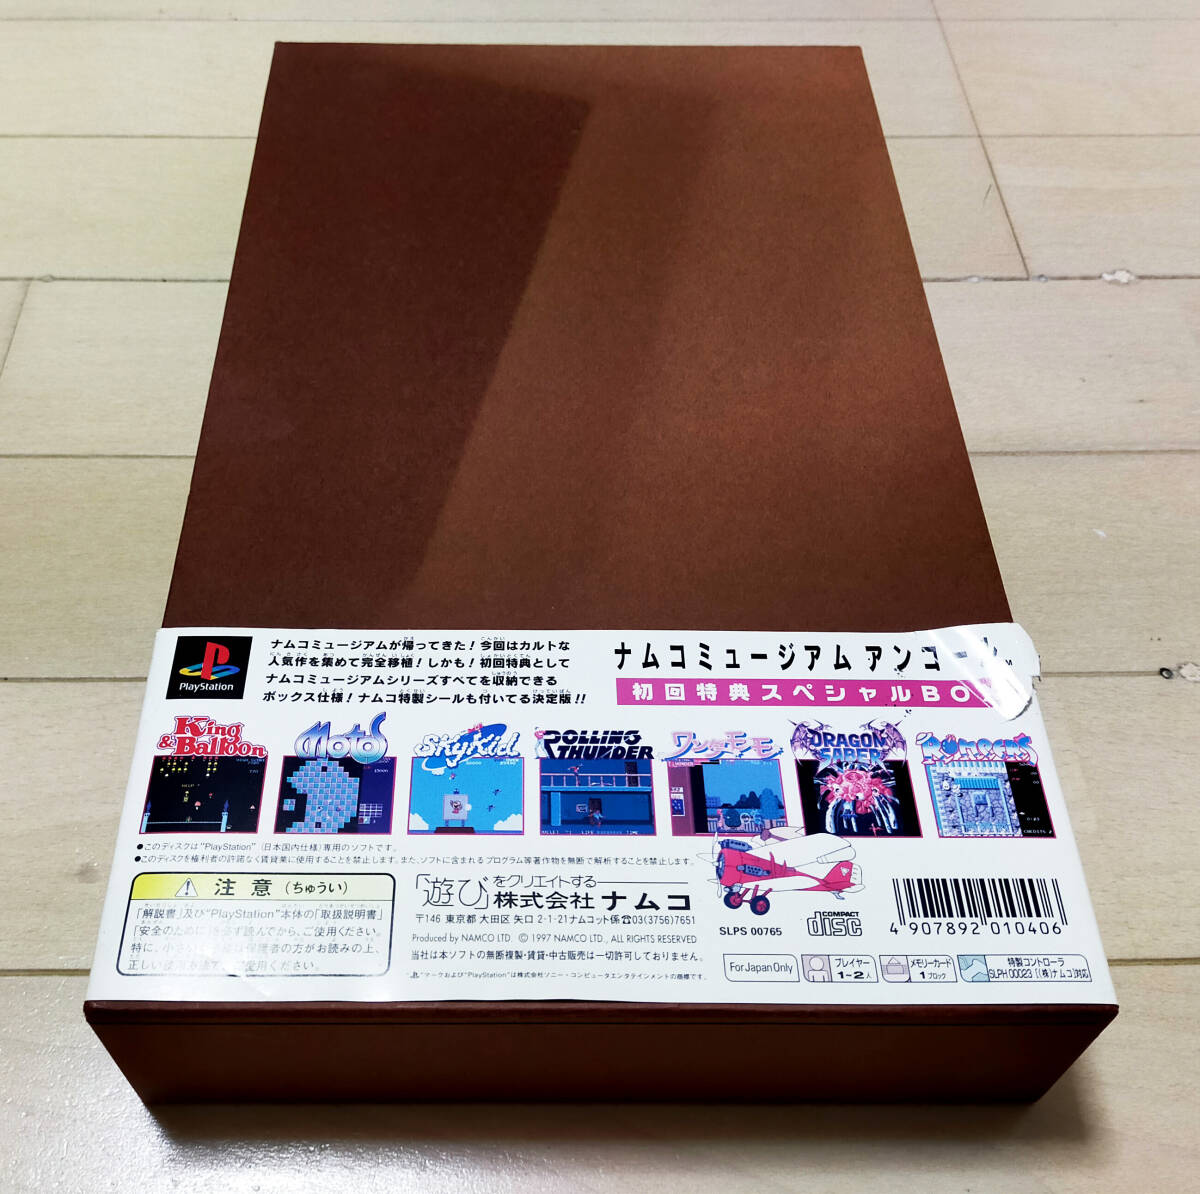 【希少】ナムコミュージアム アンコール 初回特典スペシャルBOX フルセット_画像2